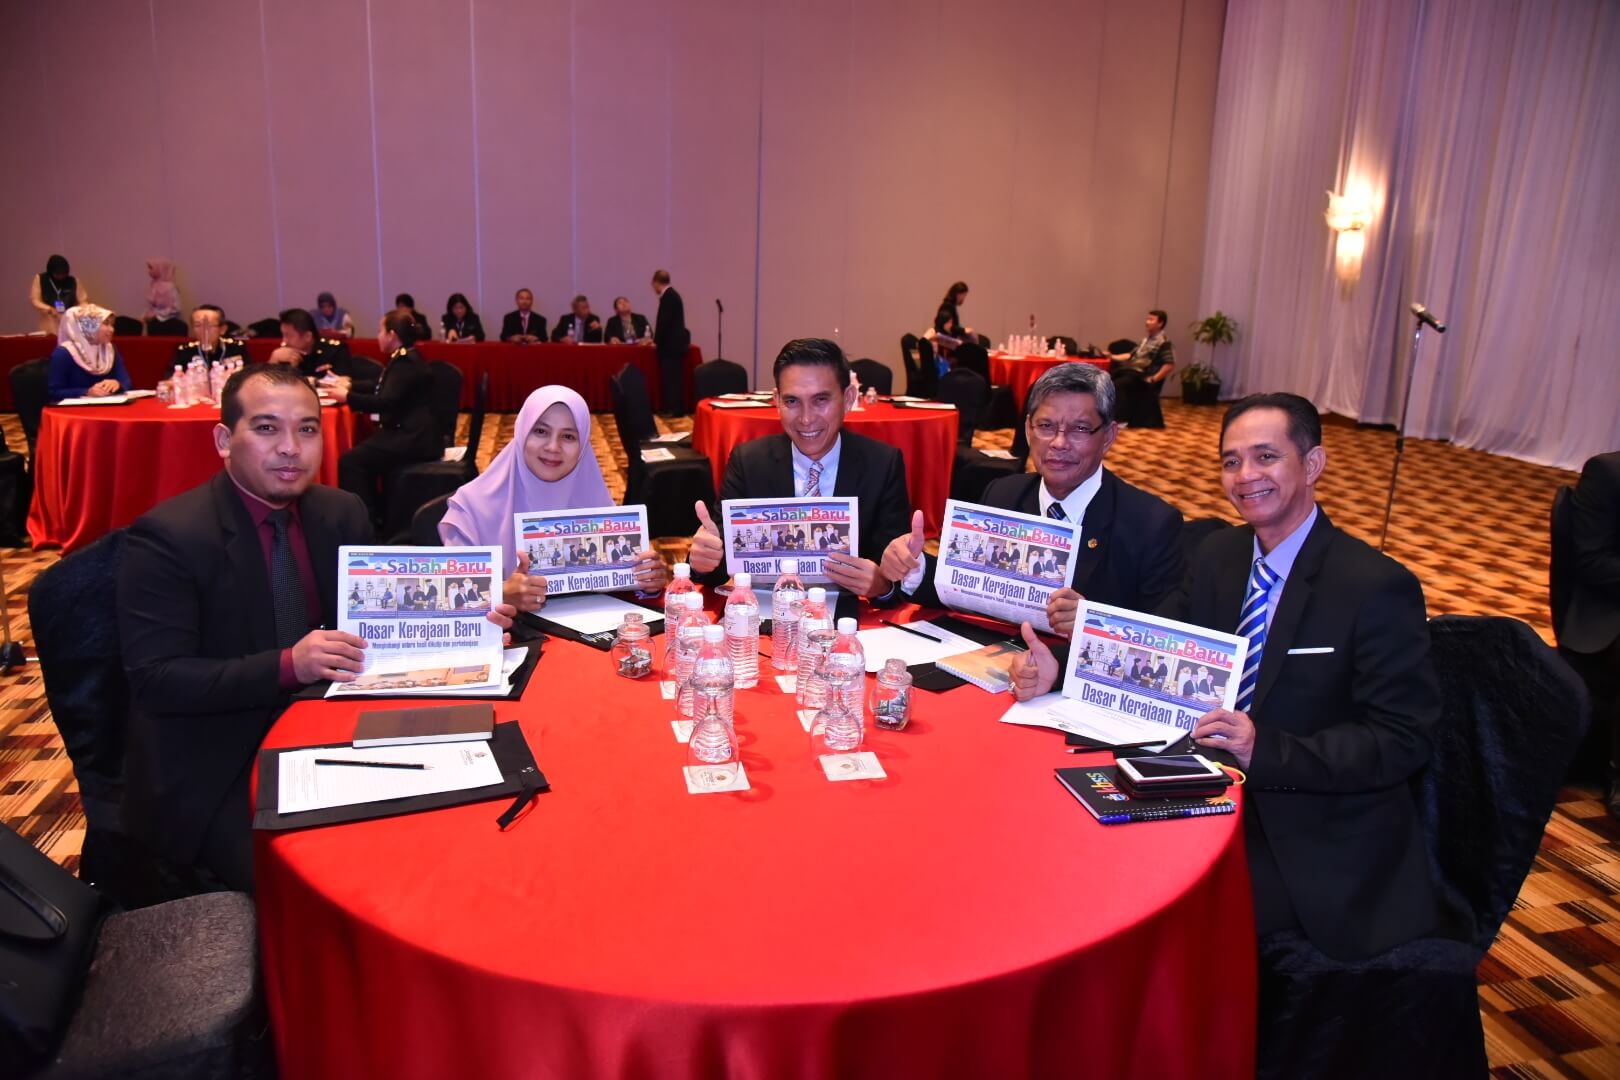 Ahli Wakil Rakyat yang hadir menunjukkan Buletin Sabah Baru yang diedarkan di program tersebut.